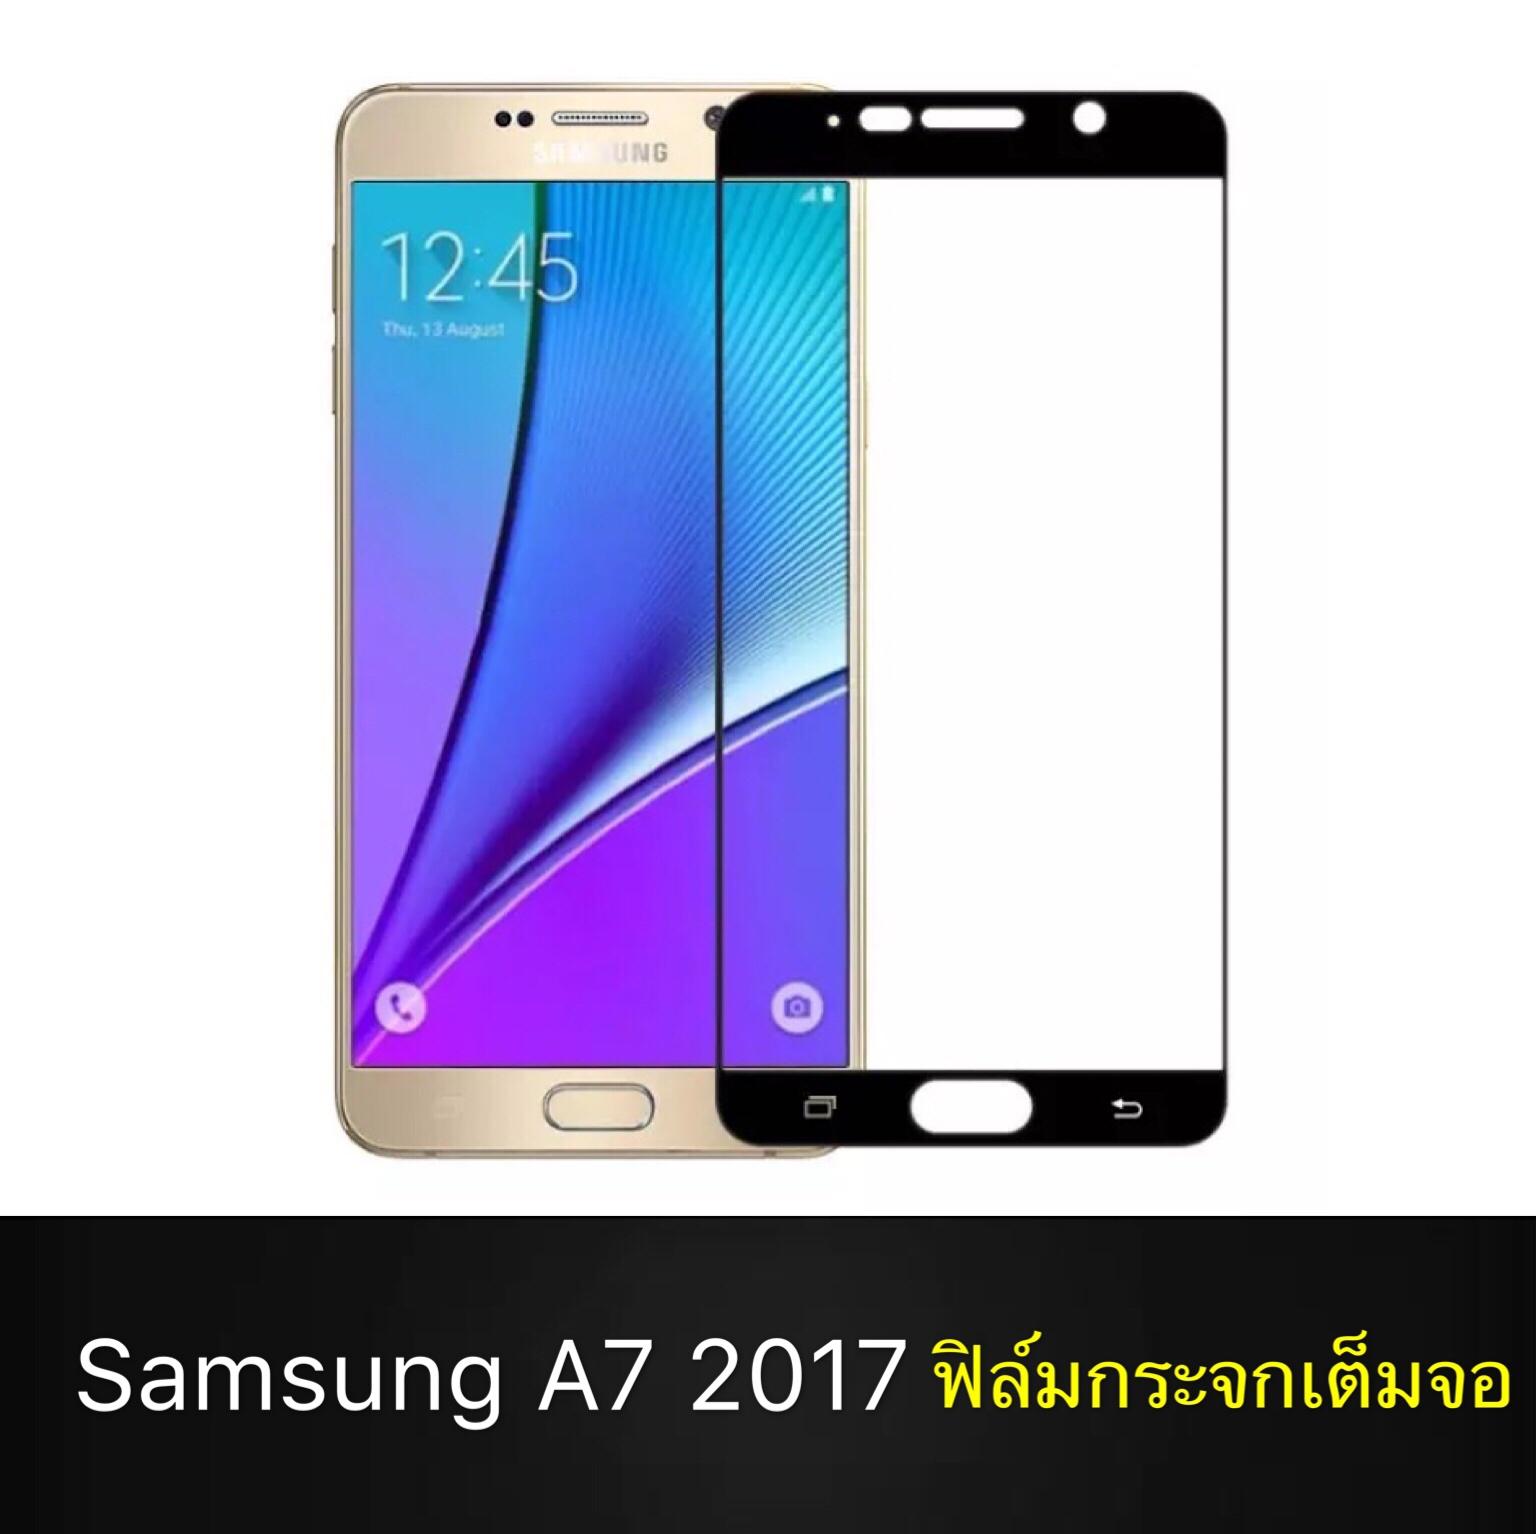 ฟิล์มกระจกนิรภัย Samsung Galaxy A7 2017 ฟิล์มเต็มจอ ใส่เคสได้ รุ่น ซัมซุง A7 (2017) ขอบดำ ฟิล์ม ฟิล์มกันกระแทก Samsung A7 2017 สินค้าใหม่ รับประกันสินค้า